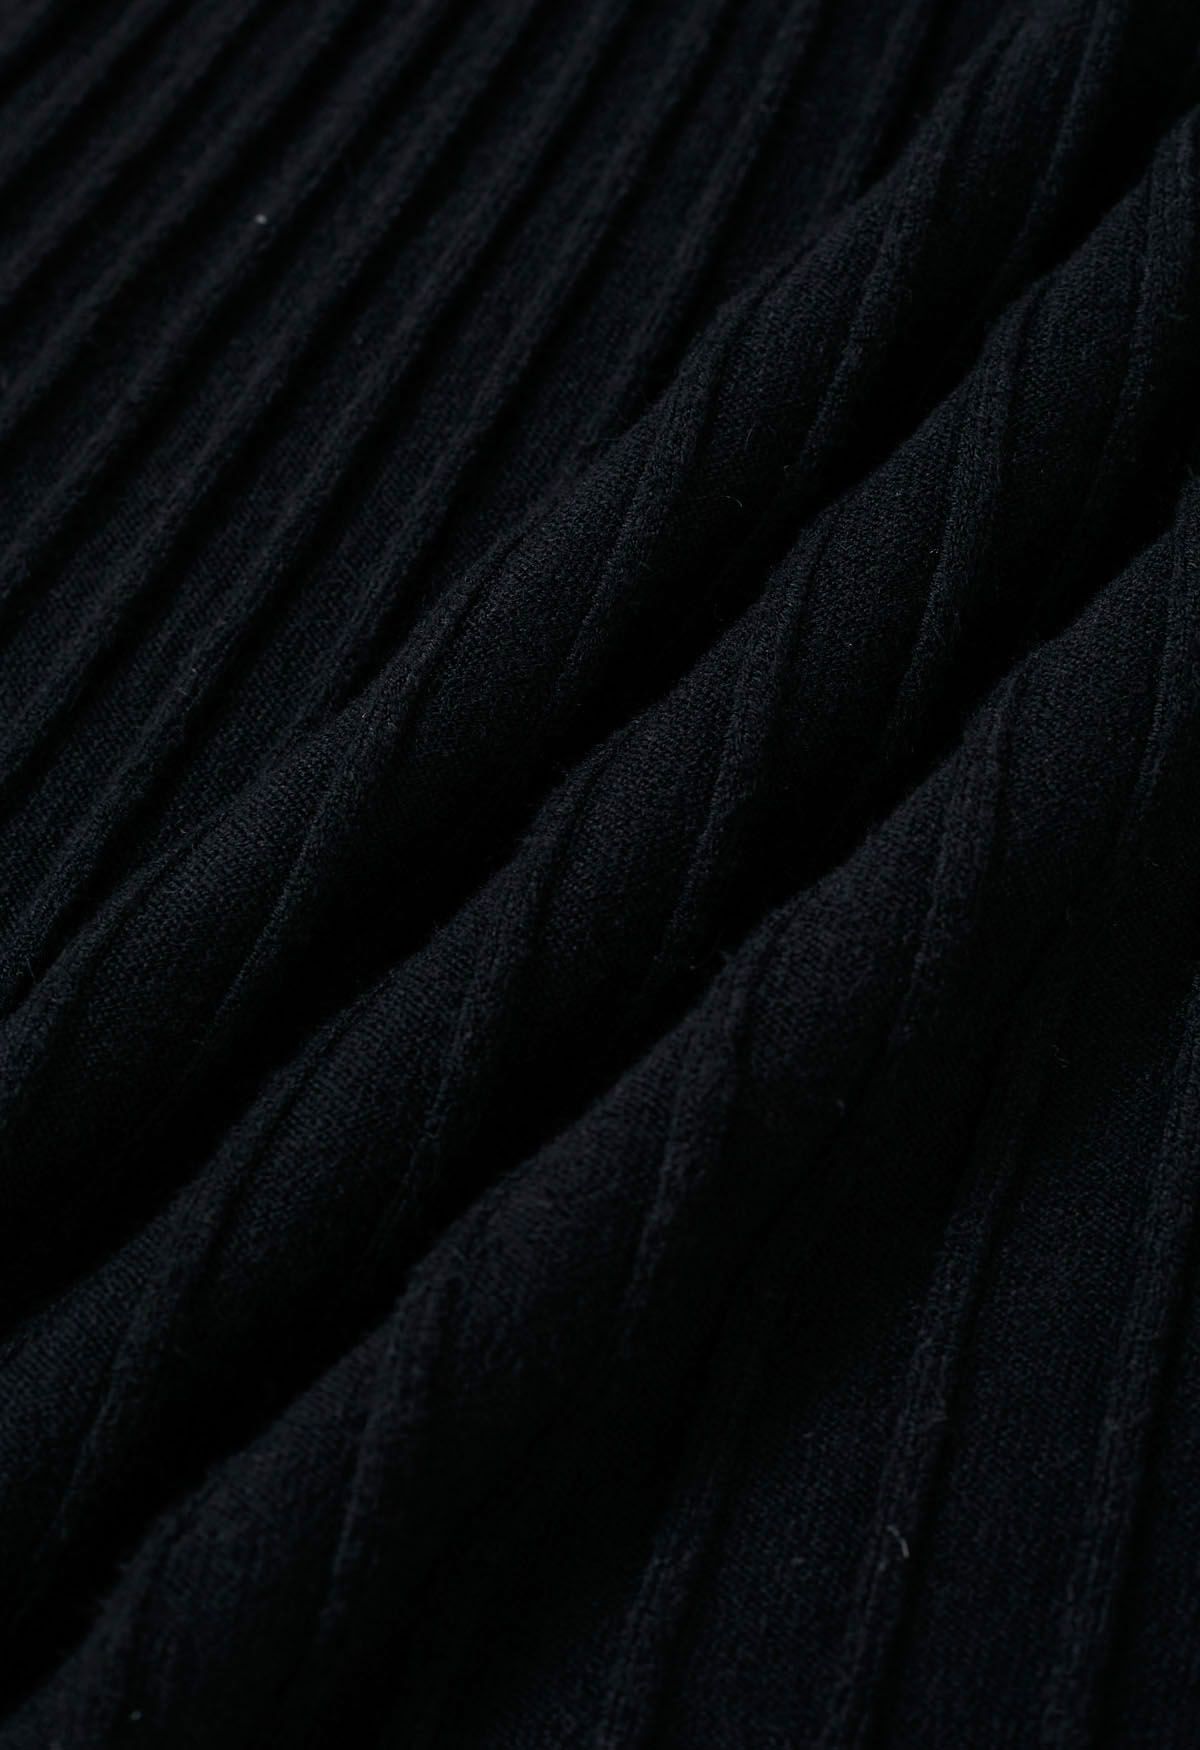 فستان منسوج ومضلع بتفاصيل أزرار باللون الأسود